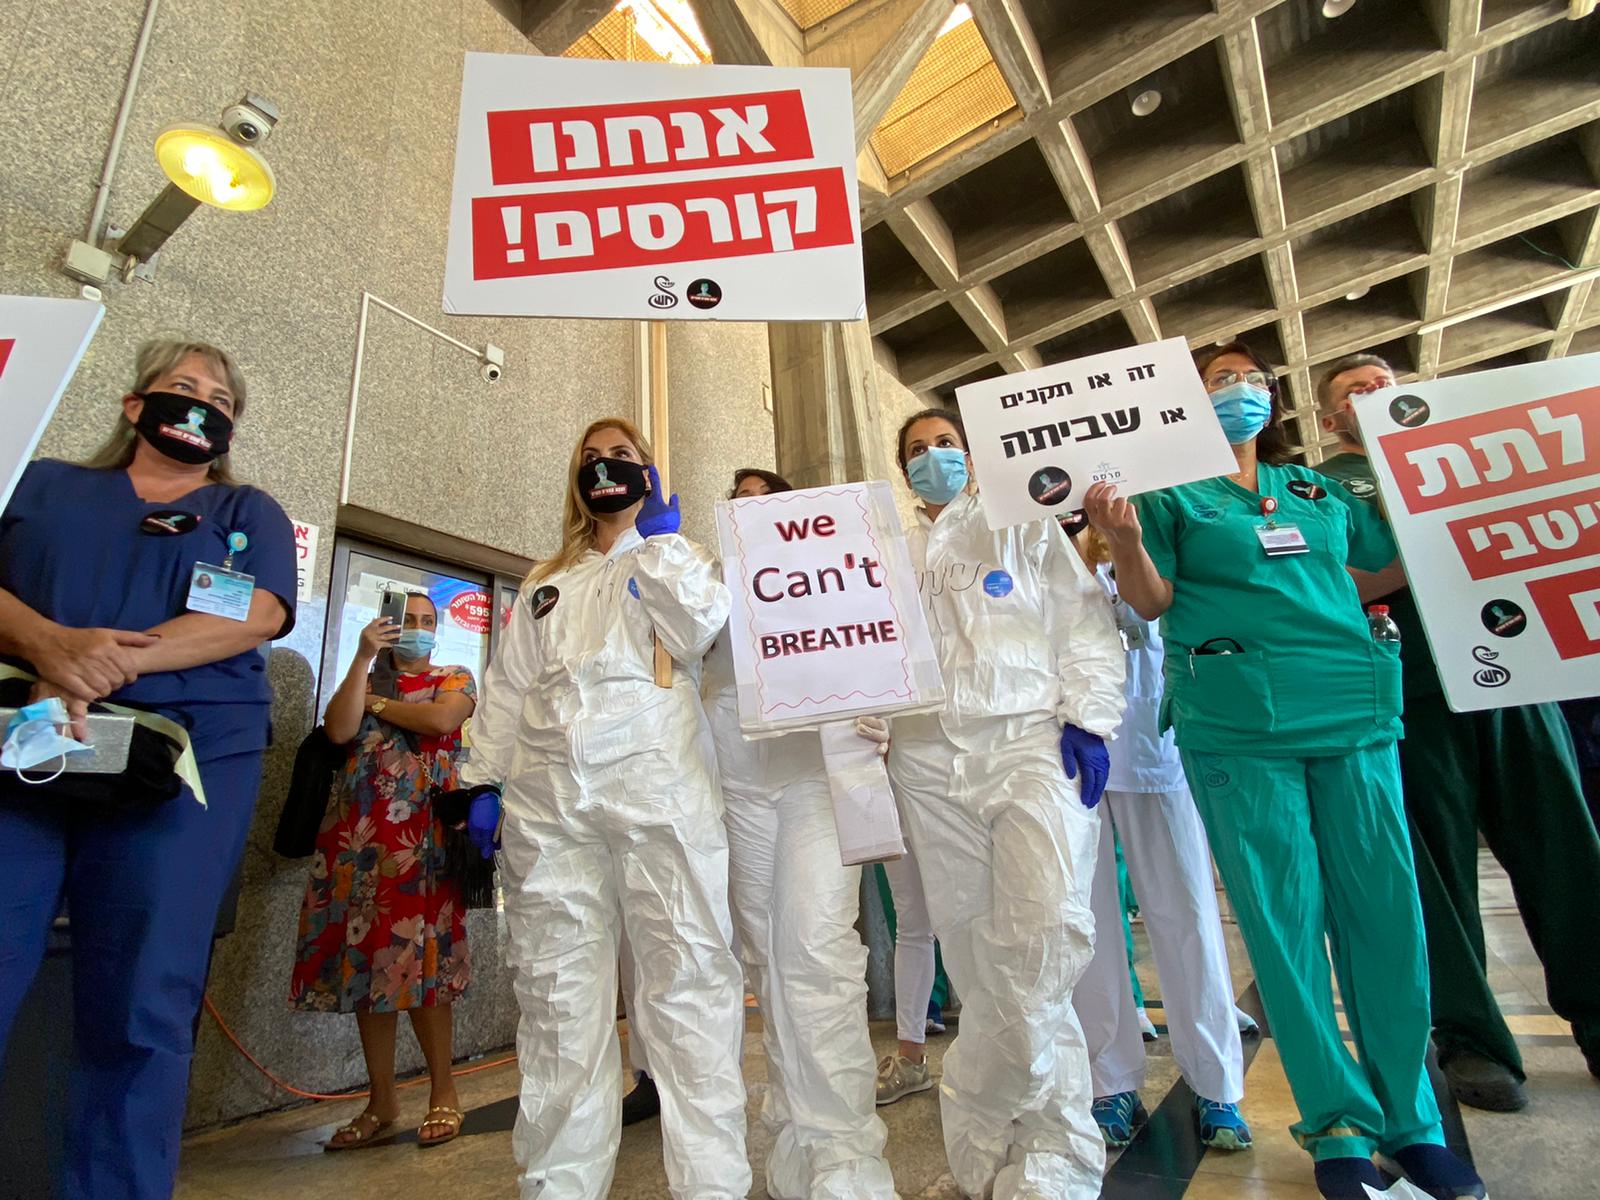 שביתת האחיות בבית החולים שיבא תל השומר. ״אם היה קורה משהו, מישהו היה יכול להאשים את השביתה. הקפדנו על ההנחיות״ (צילום: הסתדרות האחריות)